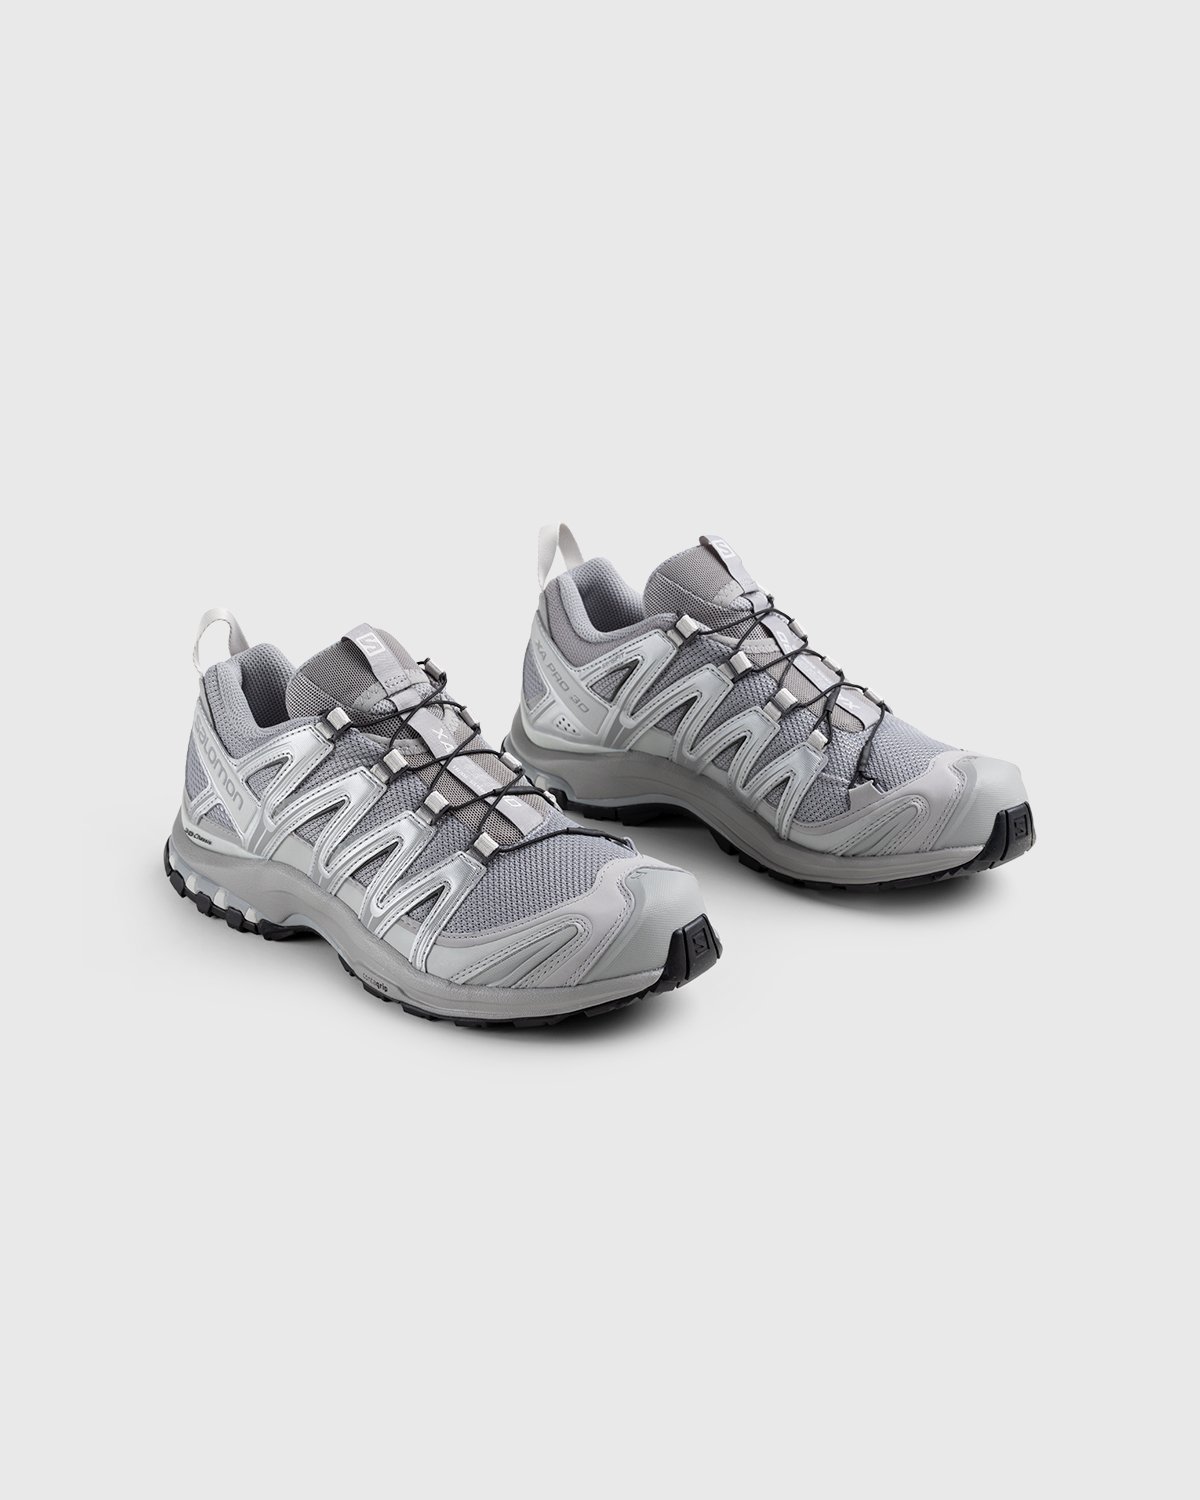 Salomon - XA Pro 3D Alloy/Silver/Lunar Rock - Footwear - White - Image 4